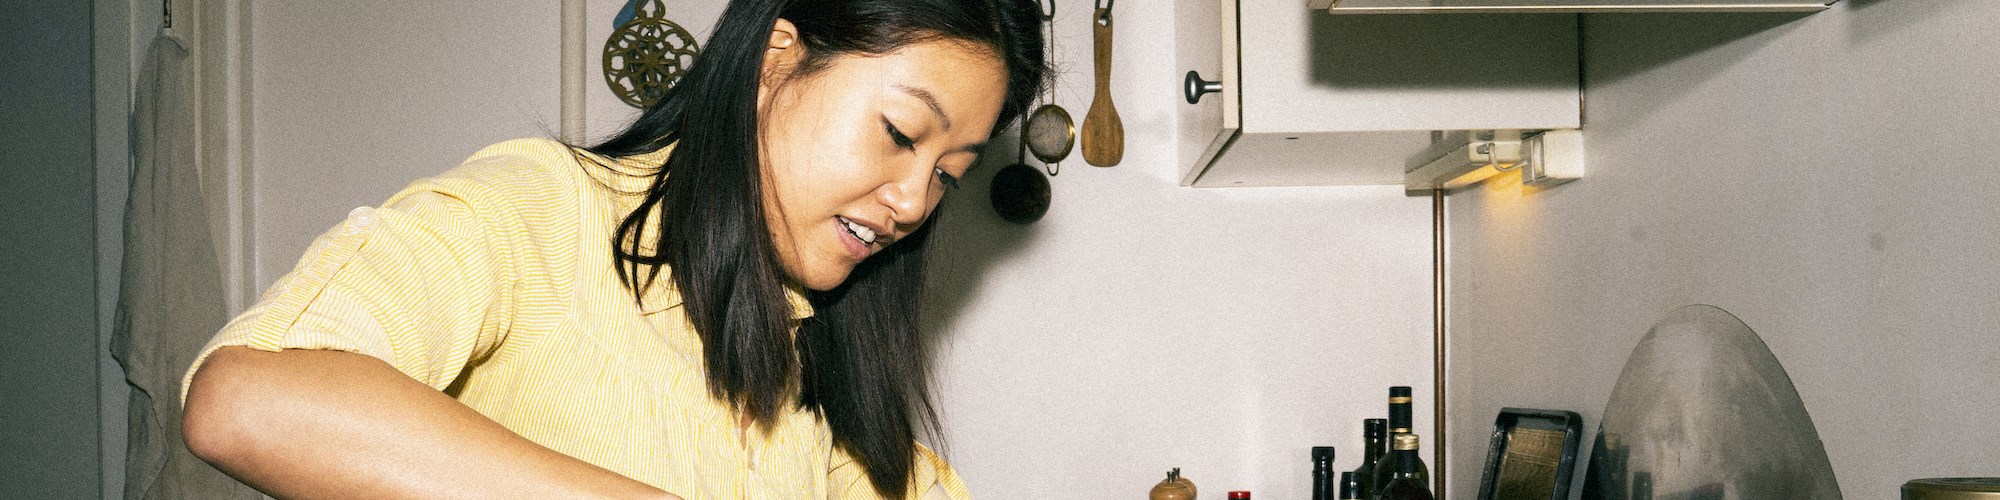 Theresa er igang med at skære en majskylling ud i sit køkken